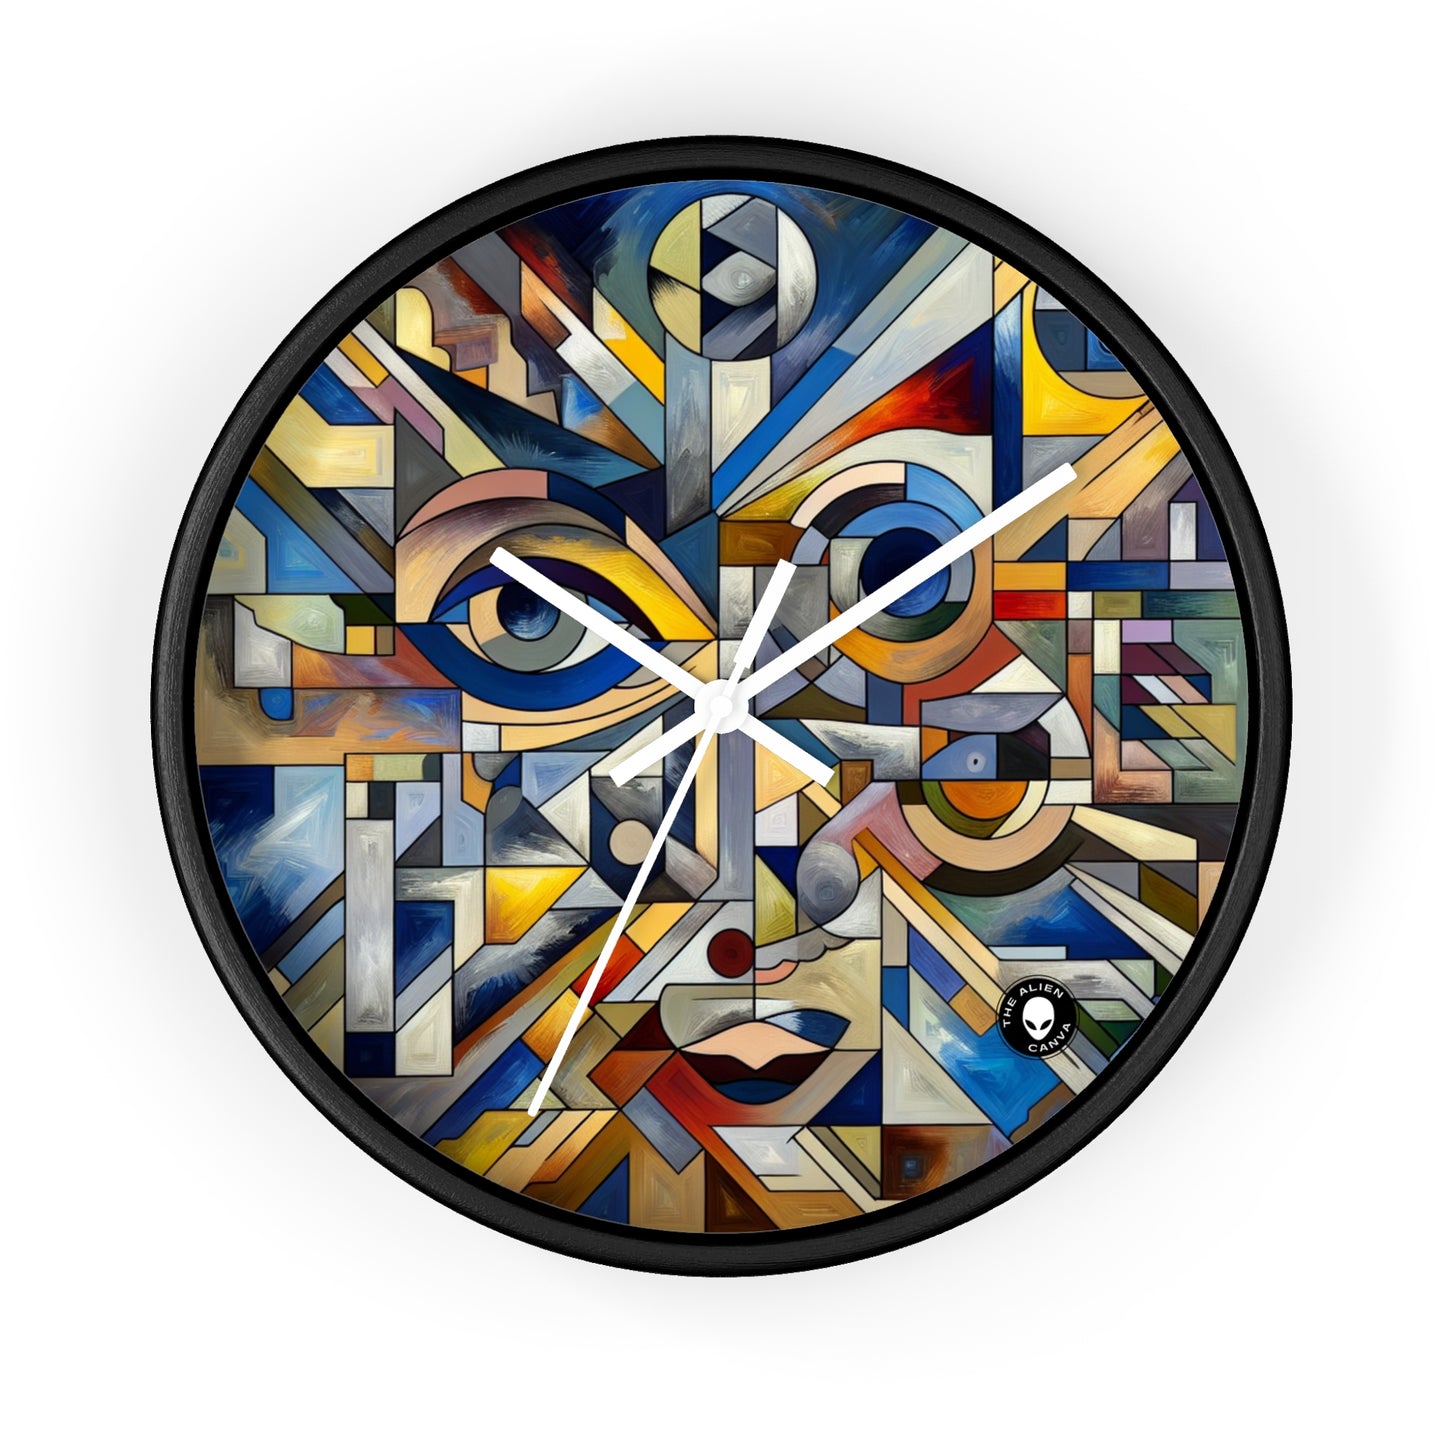 "Fragmentation urbaine : un paysage urbain cubiste analytique" - L'horloge murale extraterrestre Cubisme analytique